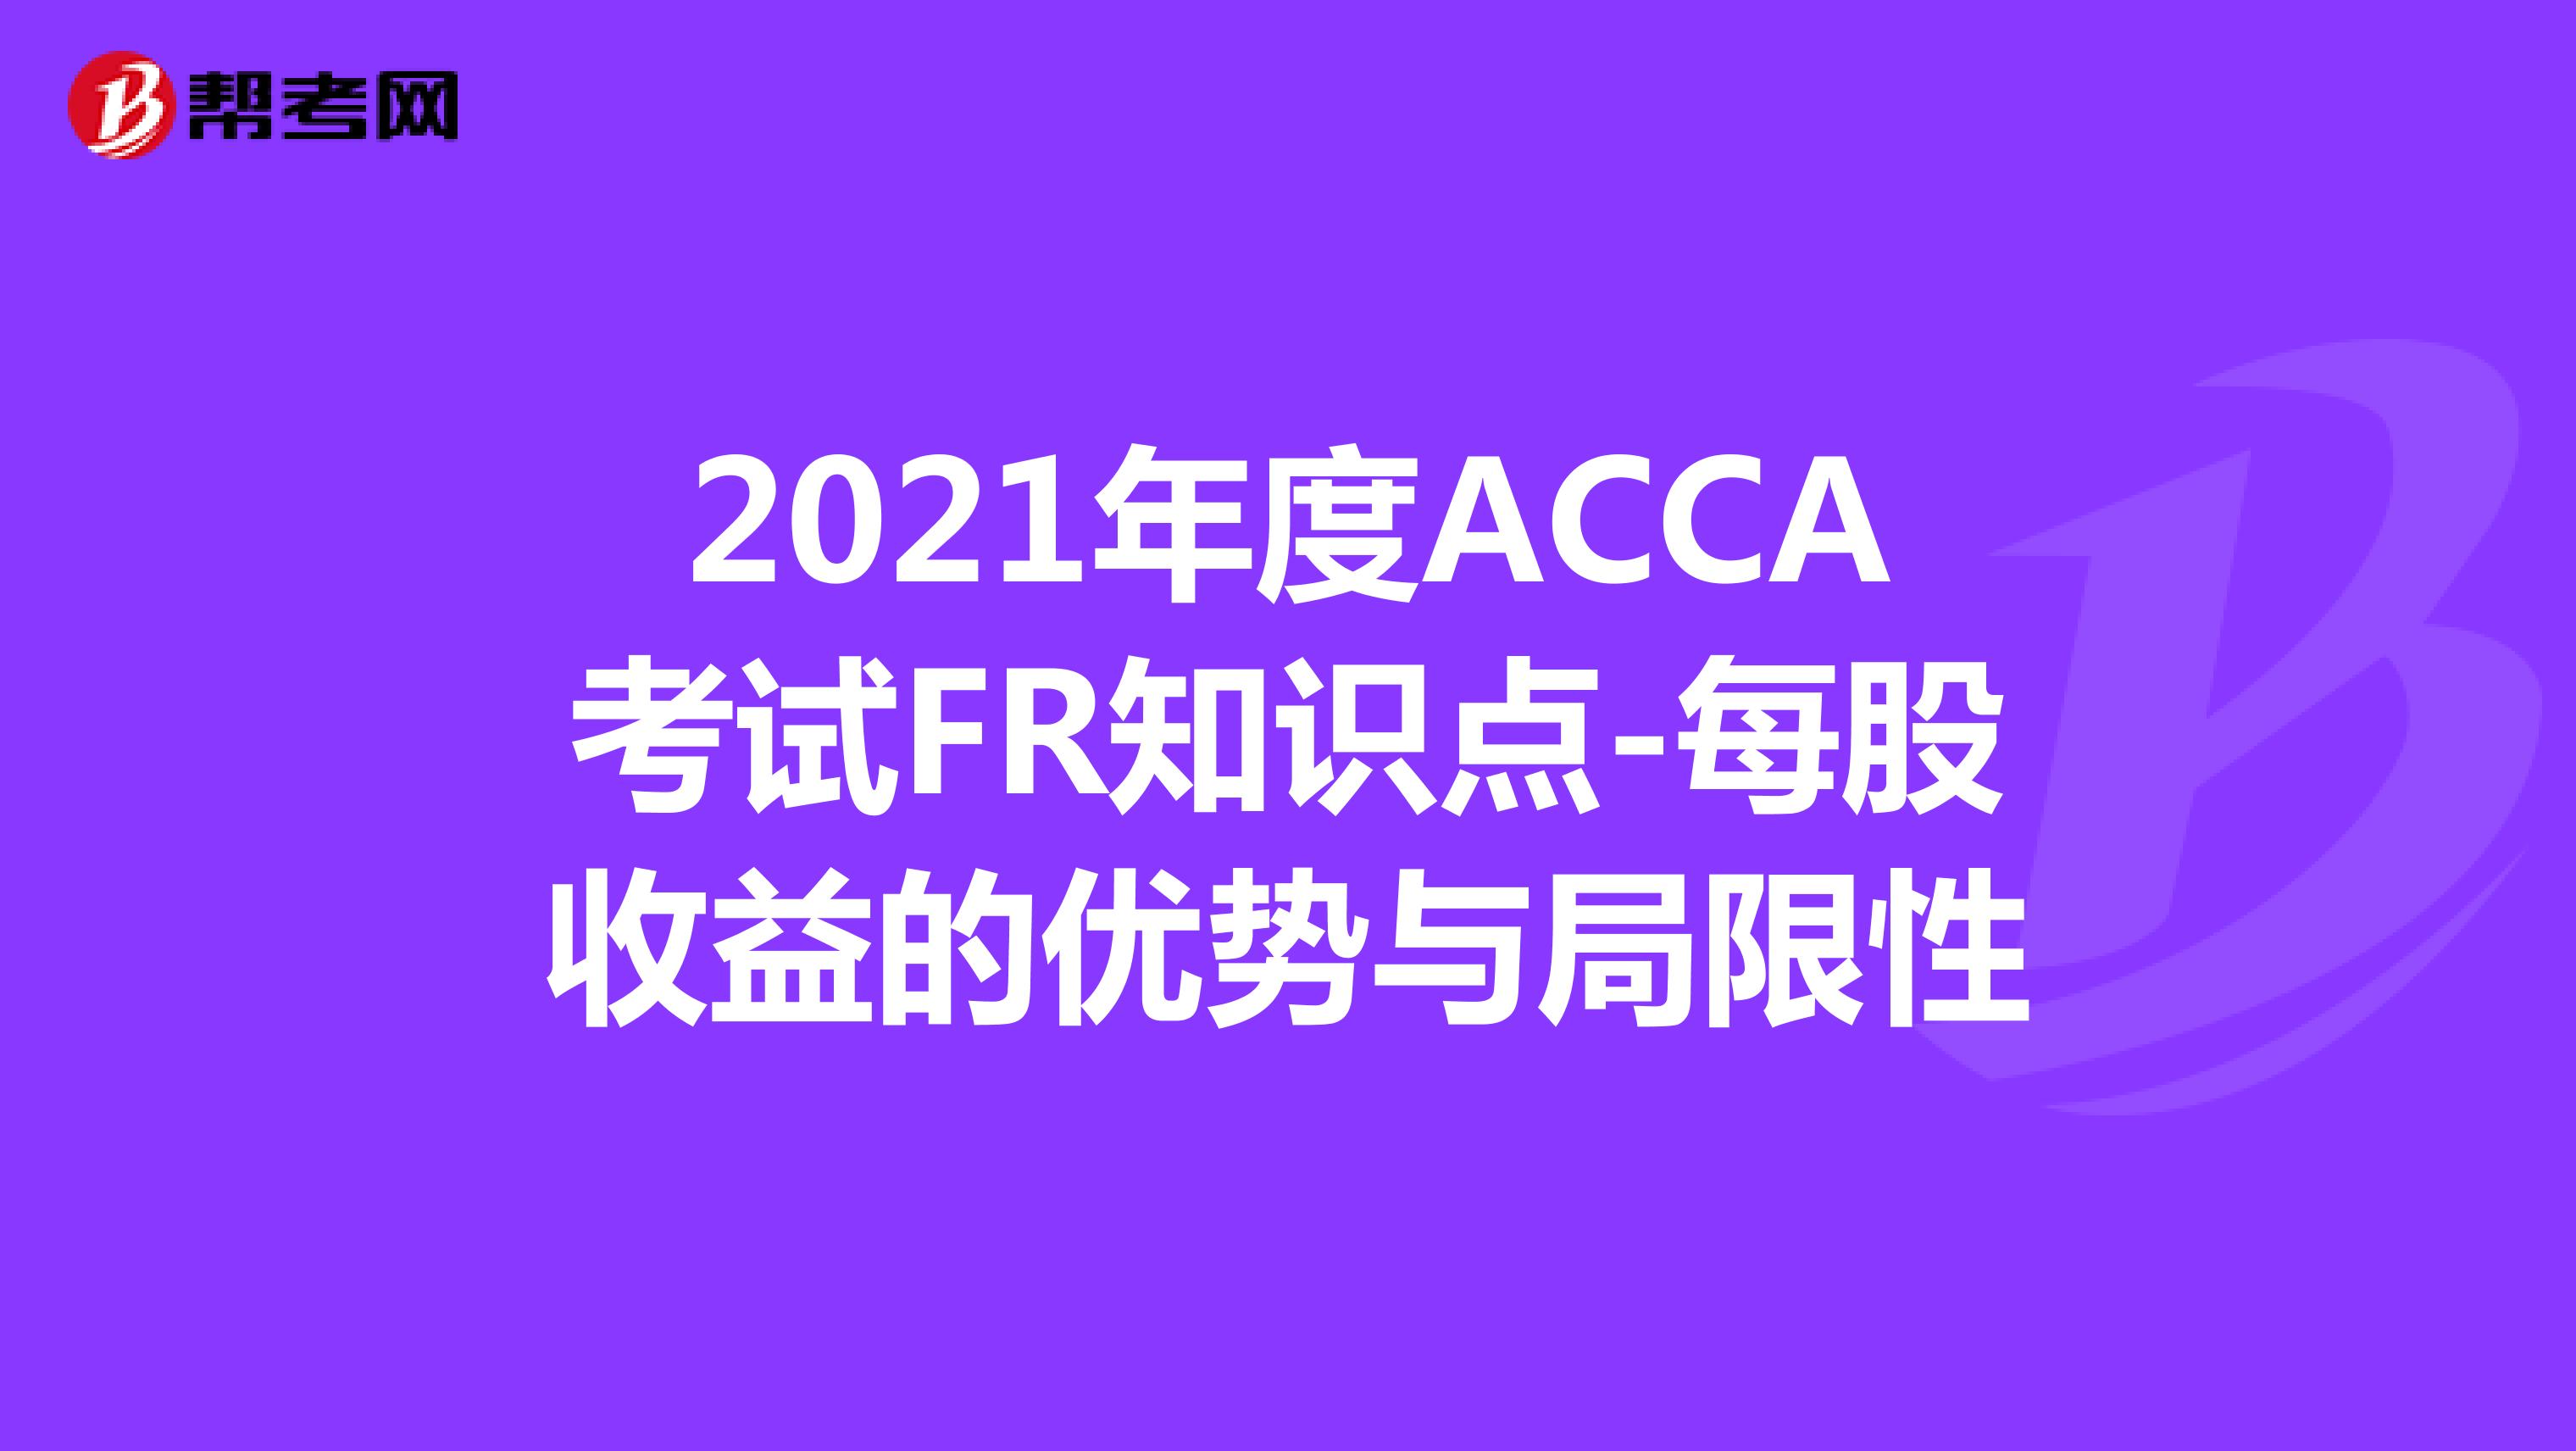 2021年度ACCA考试FR知识点-每股收益的优势与局限性